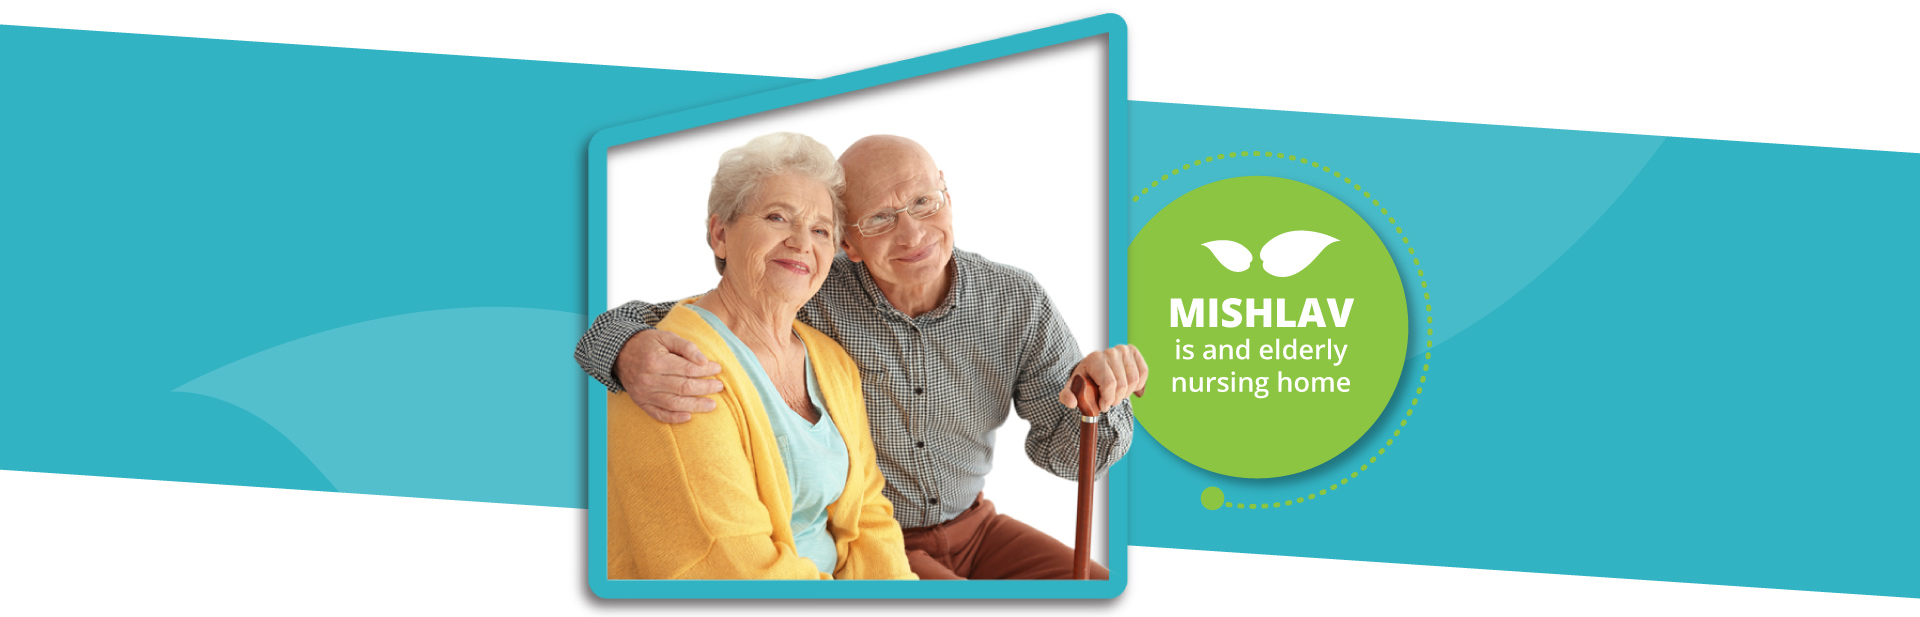 MISHLAV is and elderly nursing home